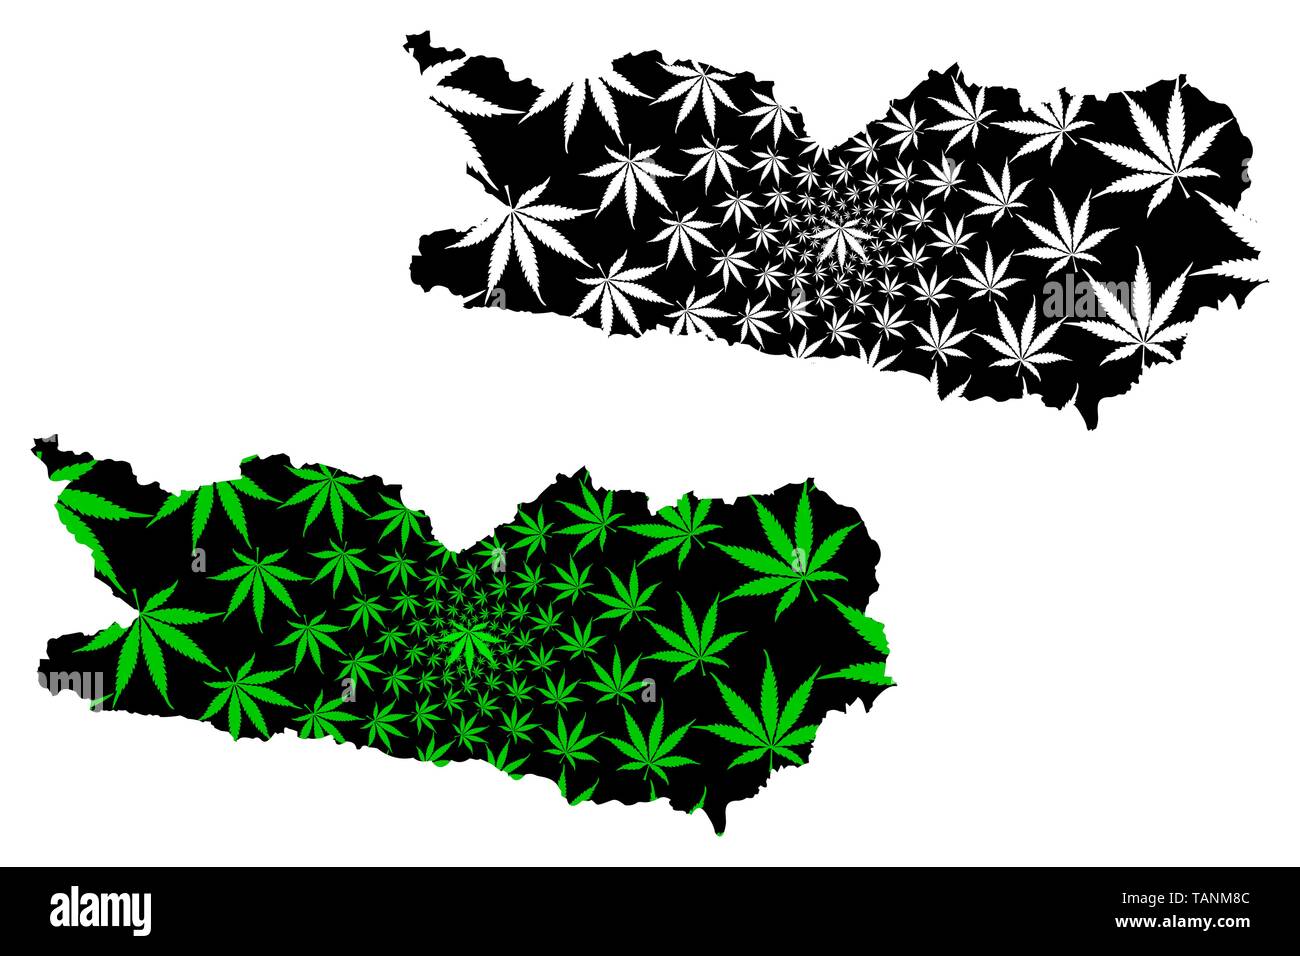 Kärnten (Republik Österreich, Österreich) Karte ist Cannabis blatt grün und schwarz ausgelegt, Kärnten Karte aus Marihuana (Marihuana, THC) Foli Stock Vektor